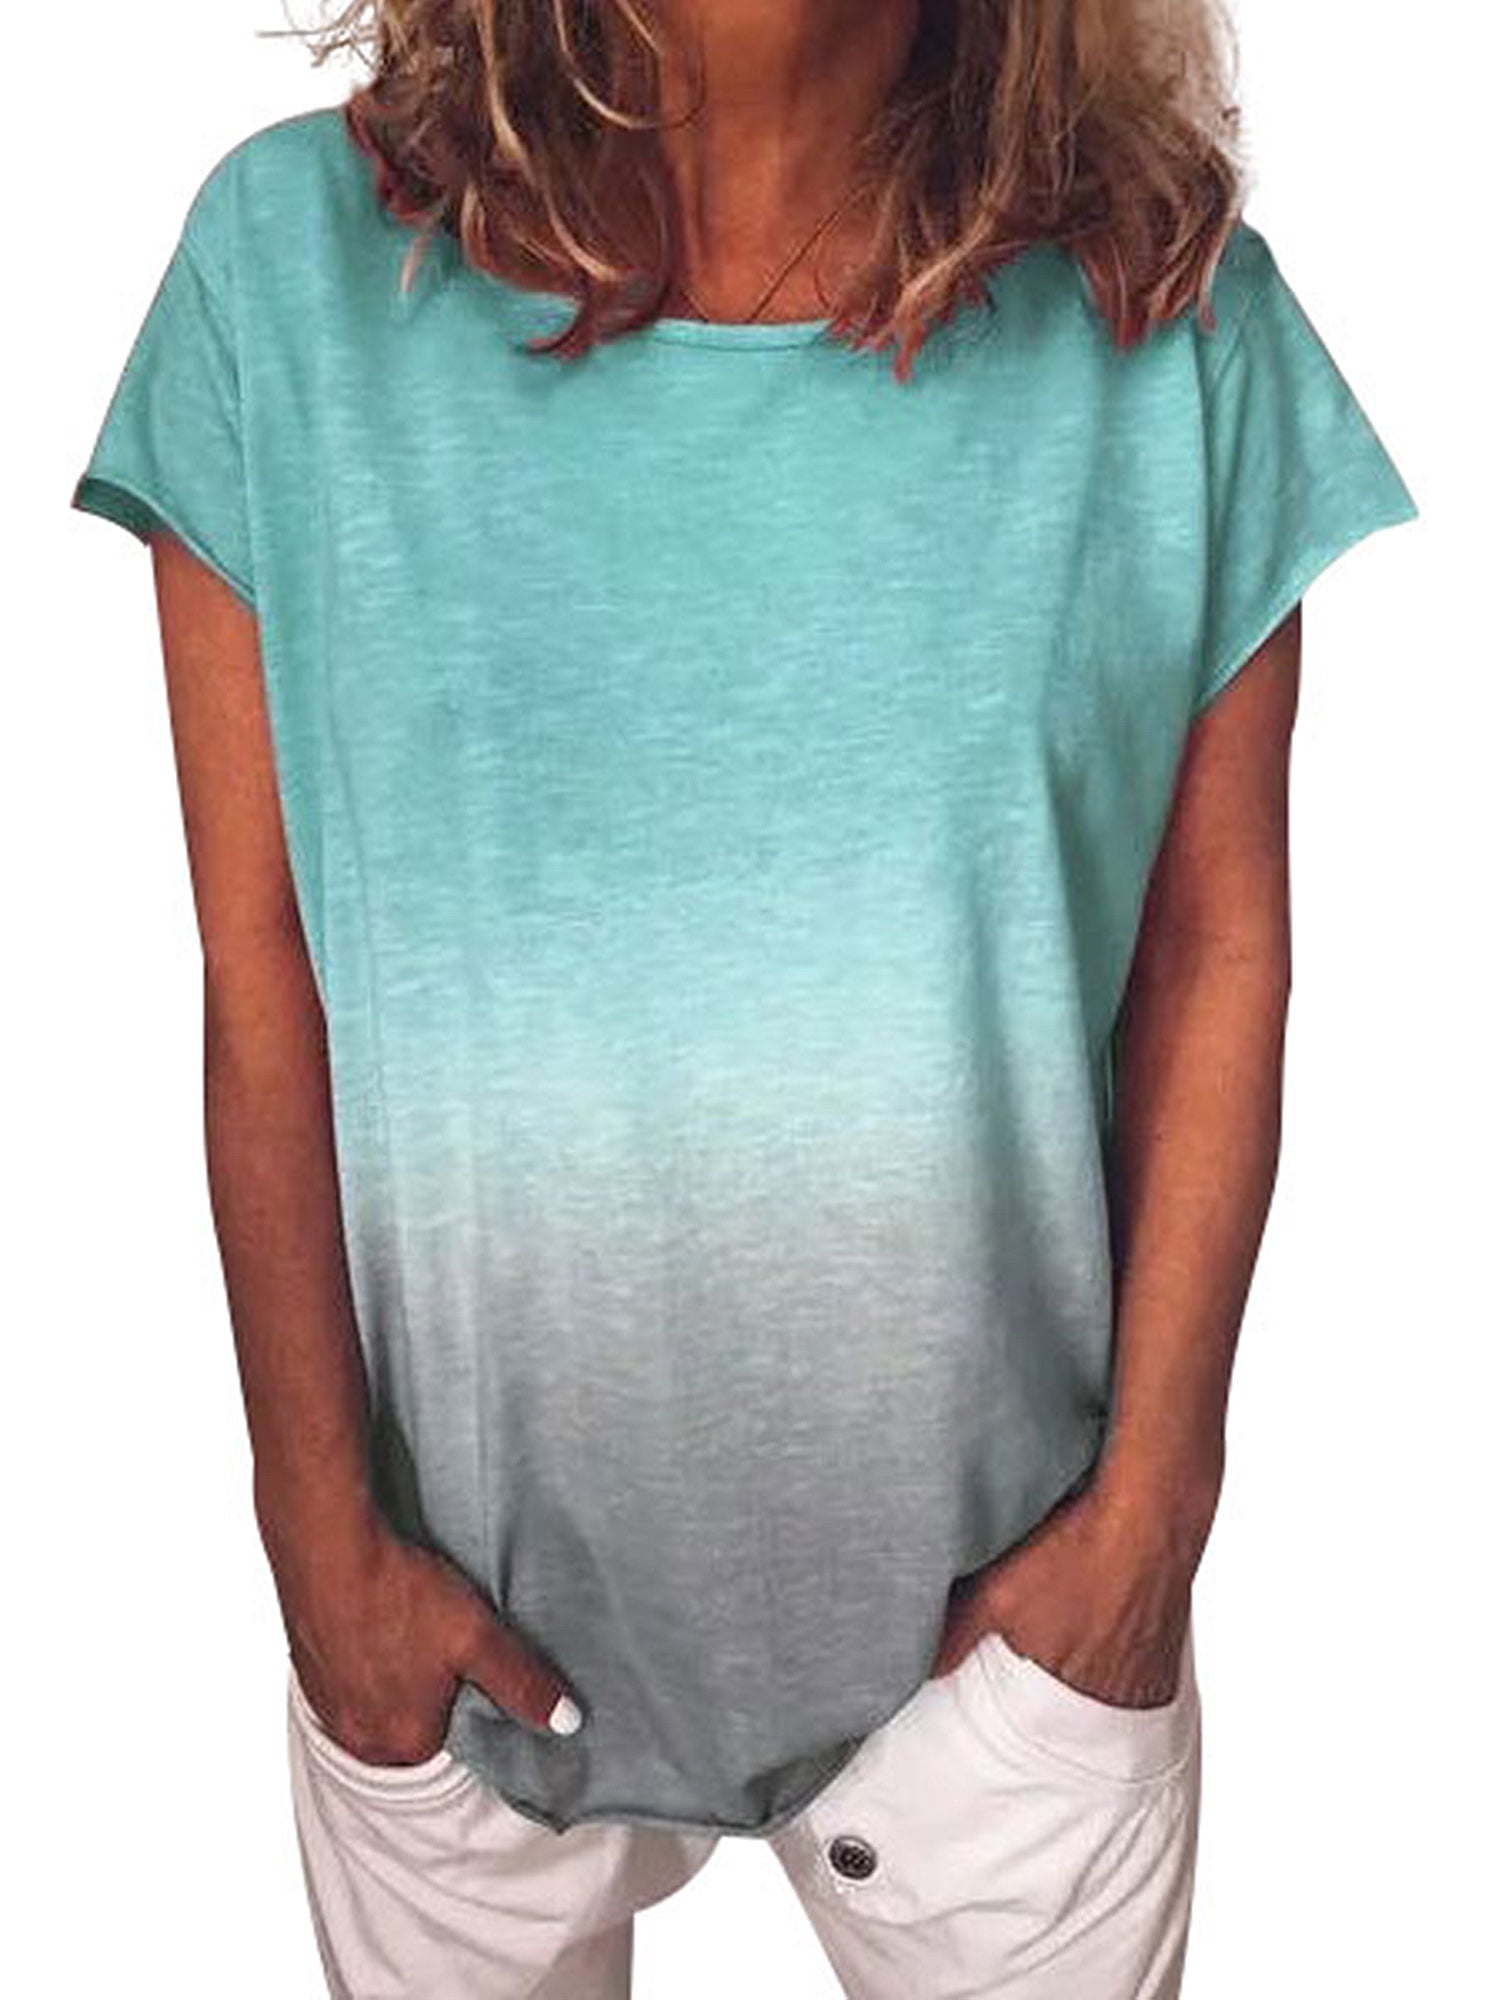 discount 68% NoName T-shirt Green M WOMEN FASHION Shirts & T-shirts Crochet 